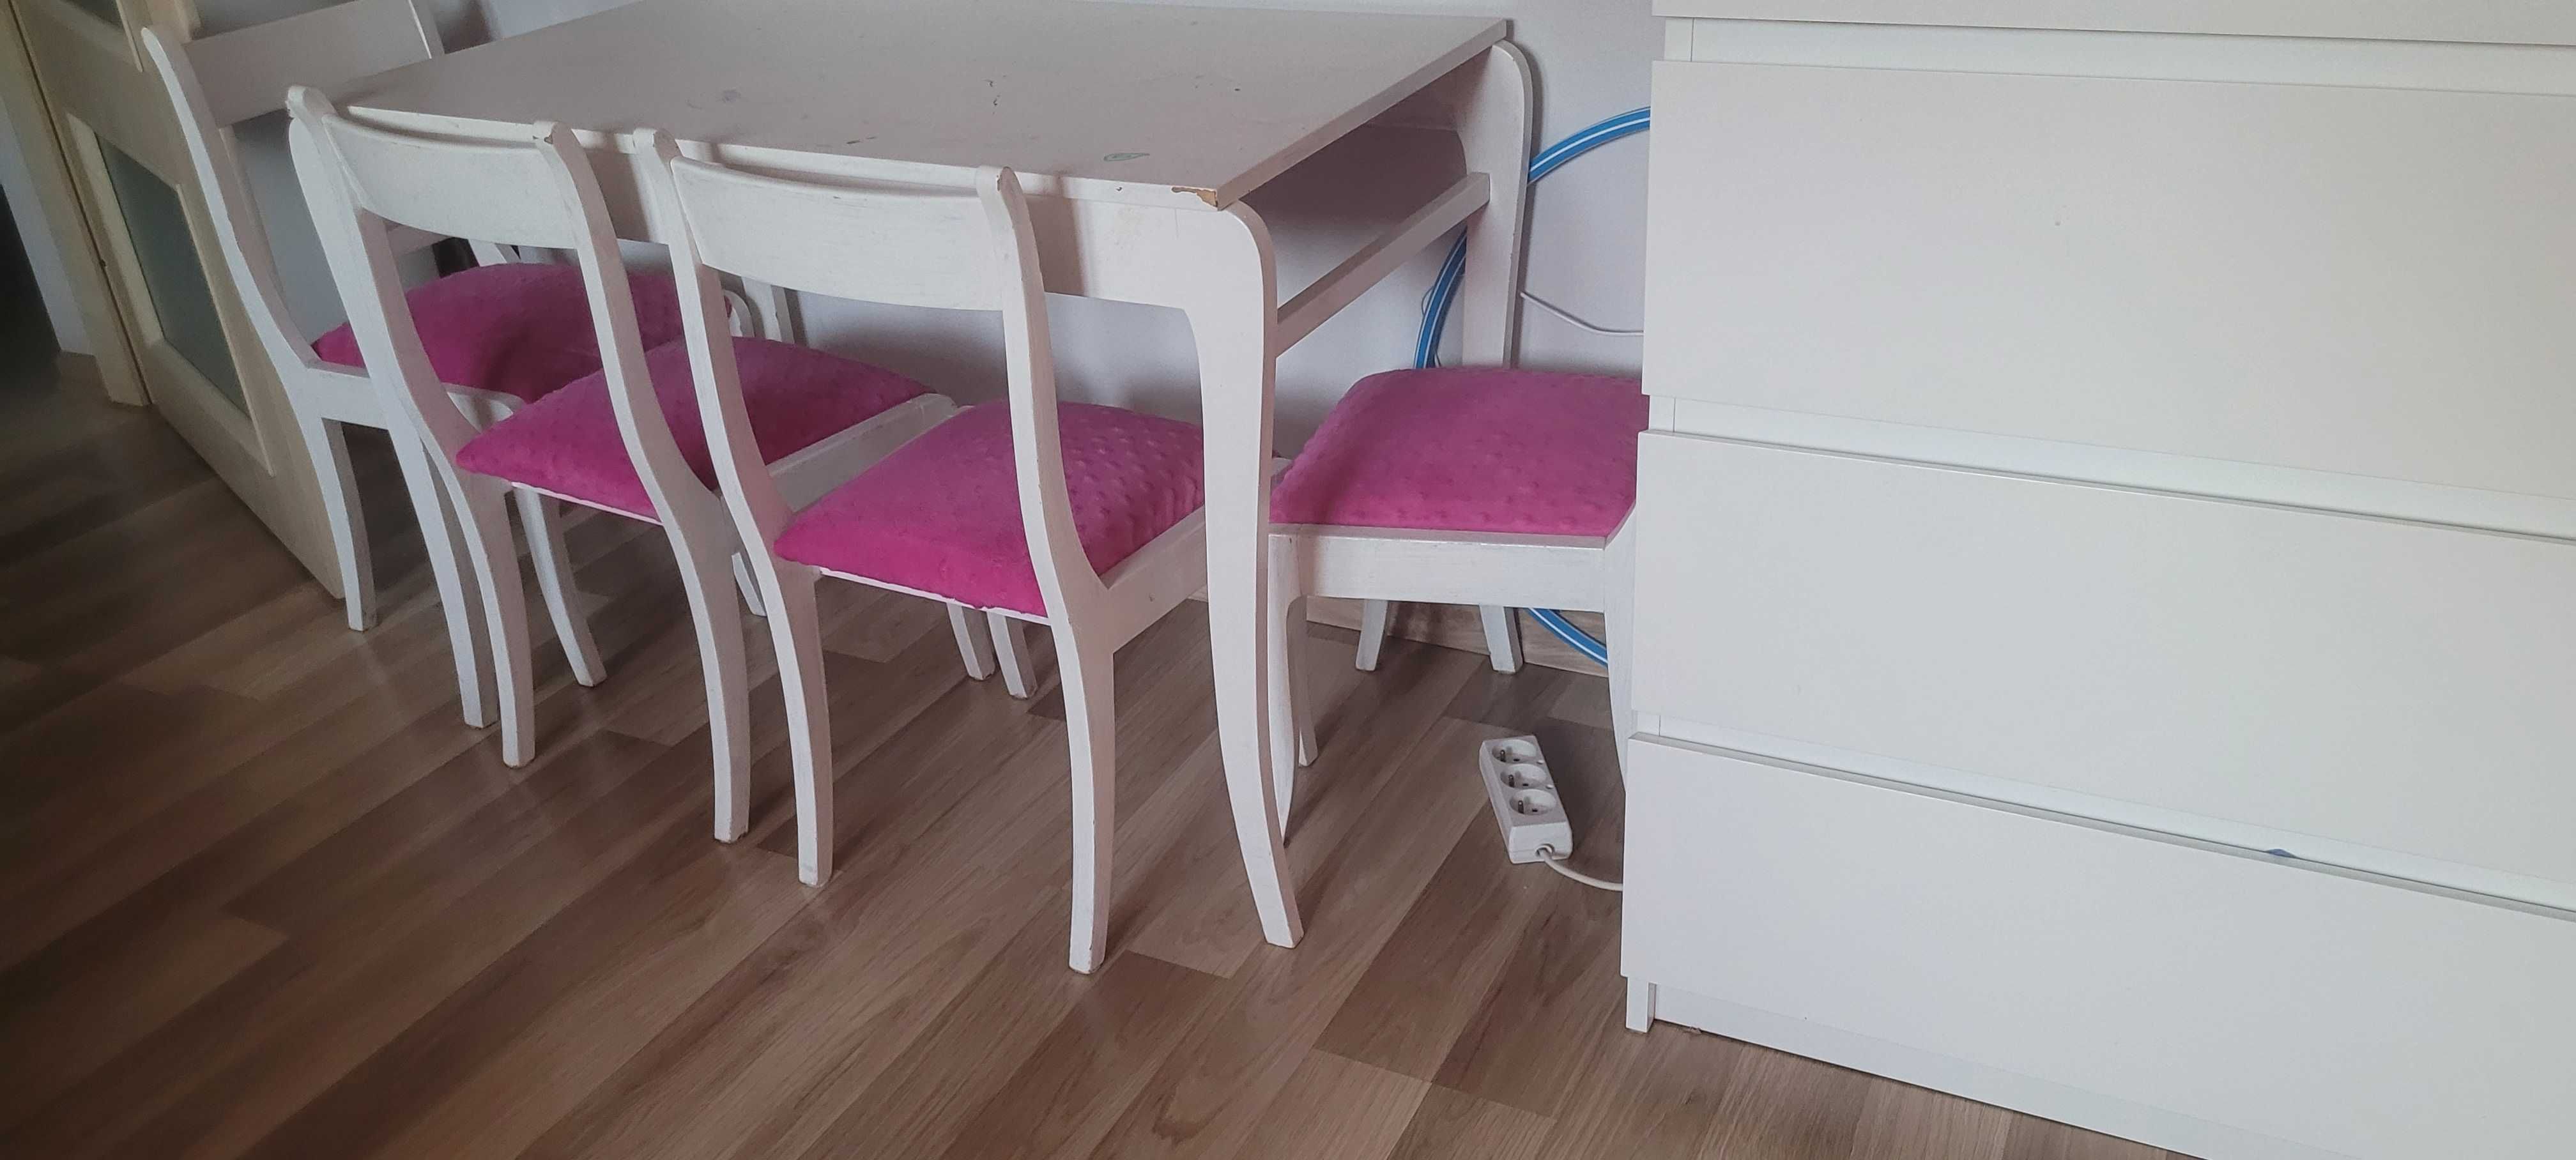 Drewniany Komplet stolik i 4 krzesła  dziecięce